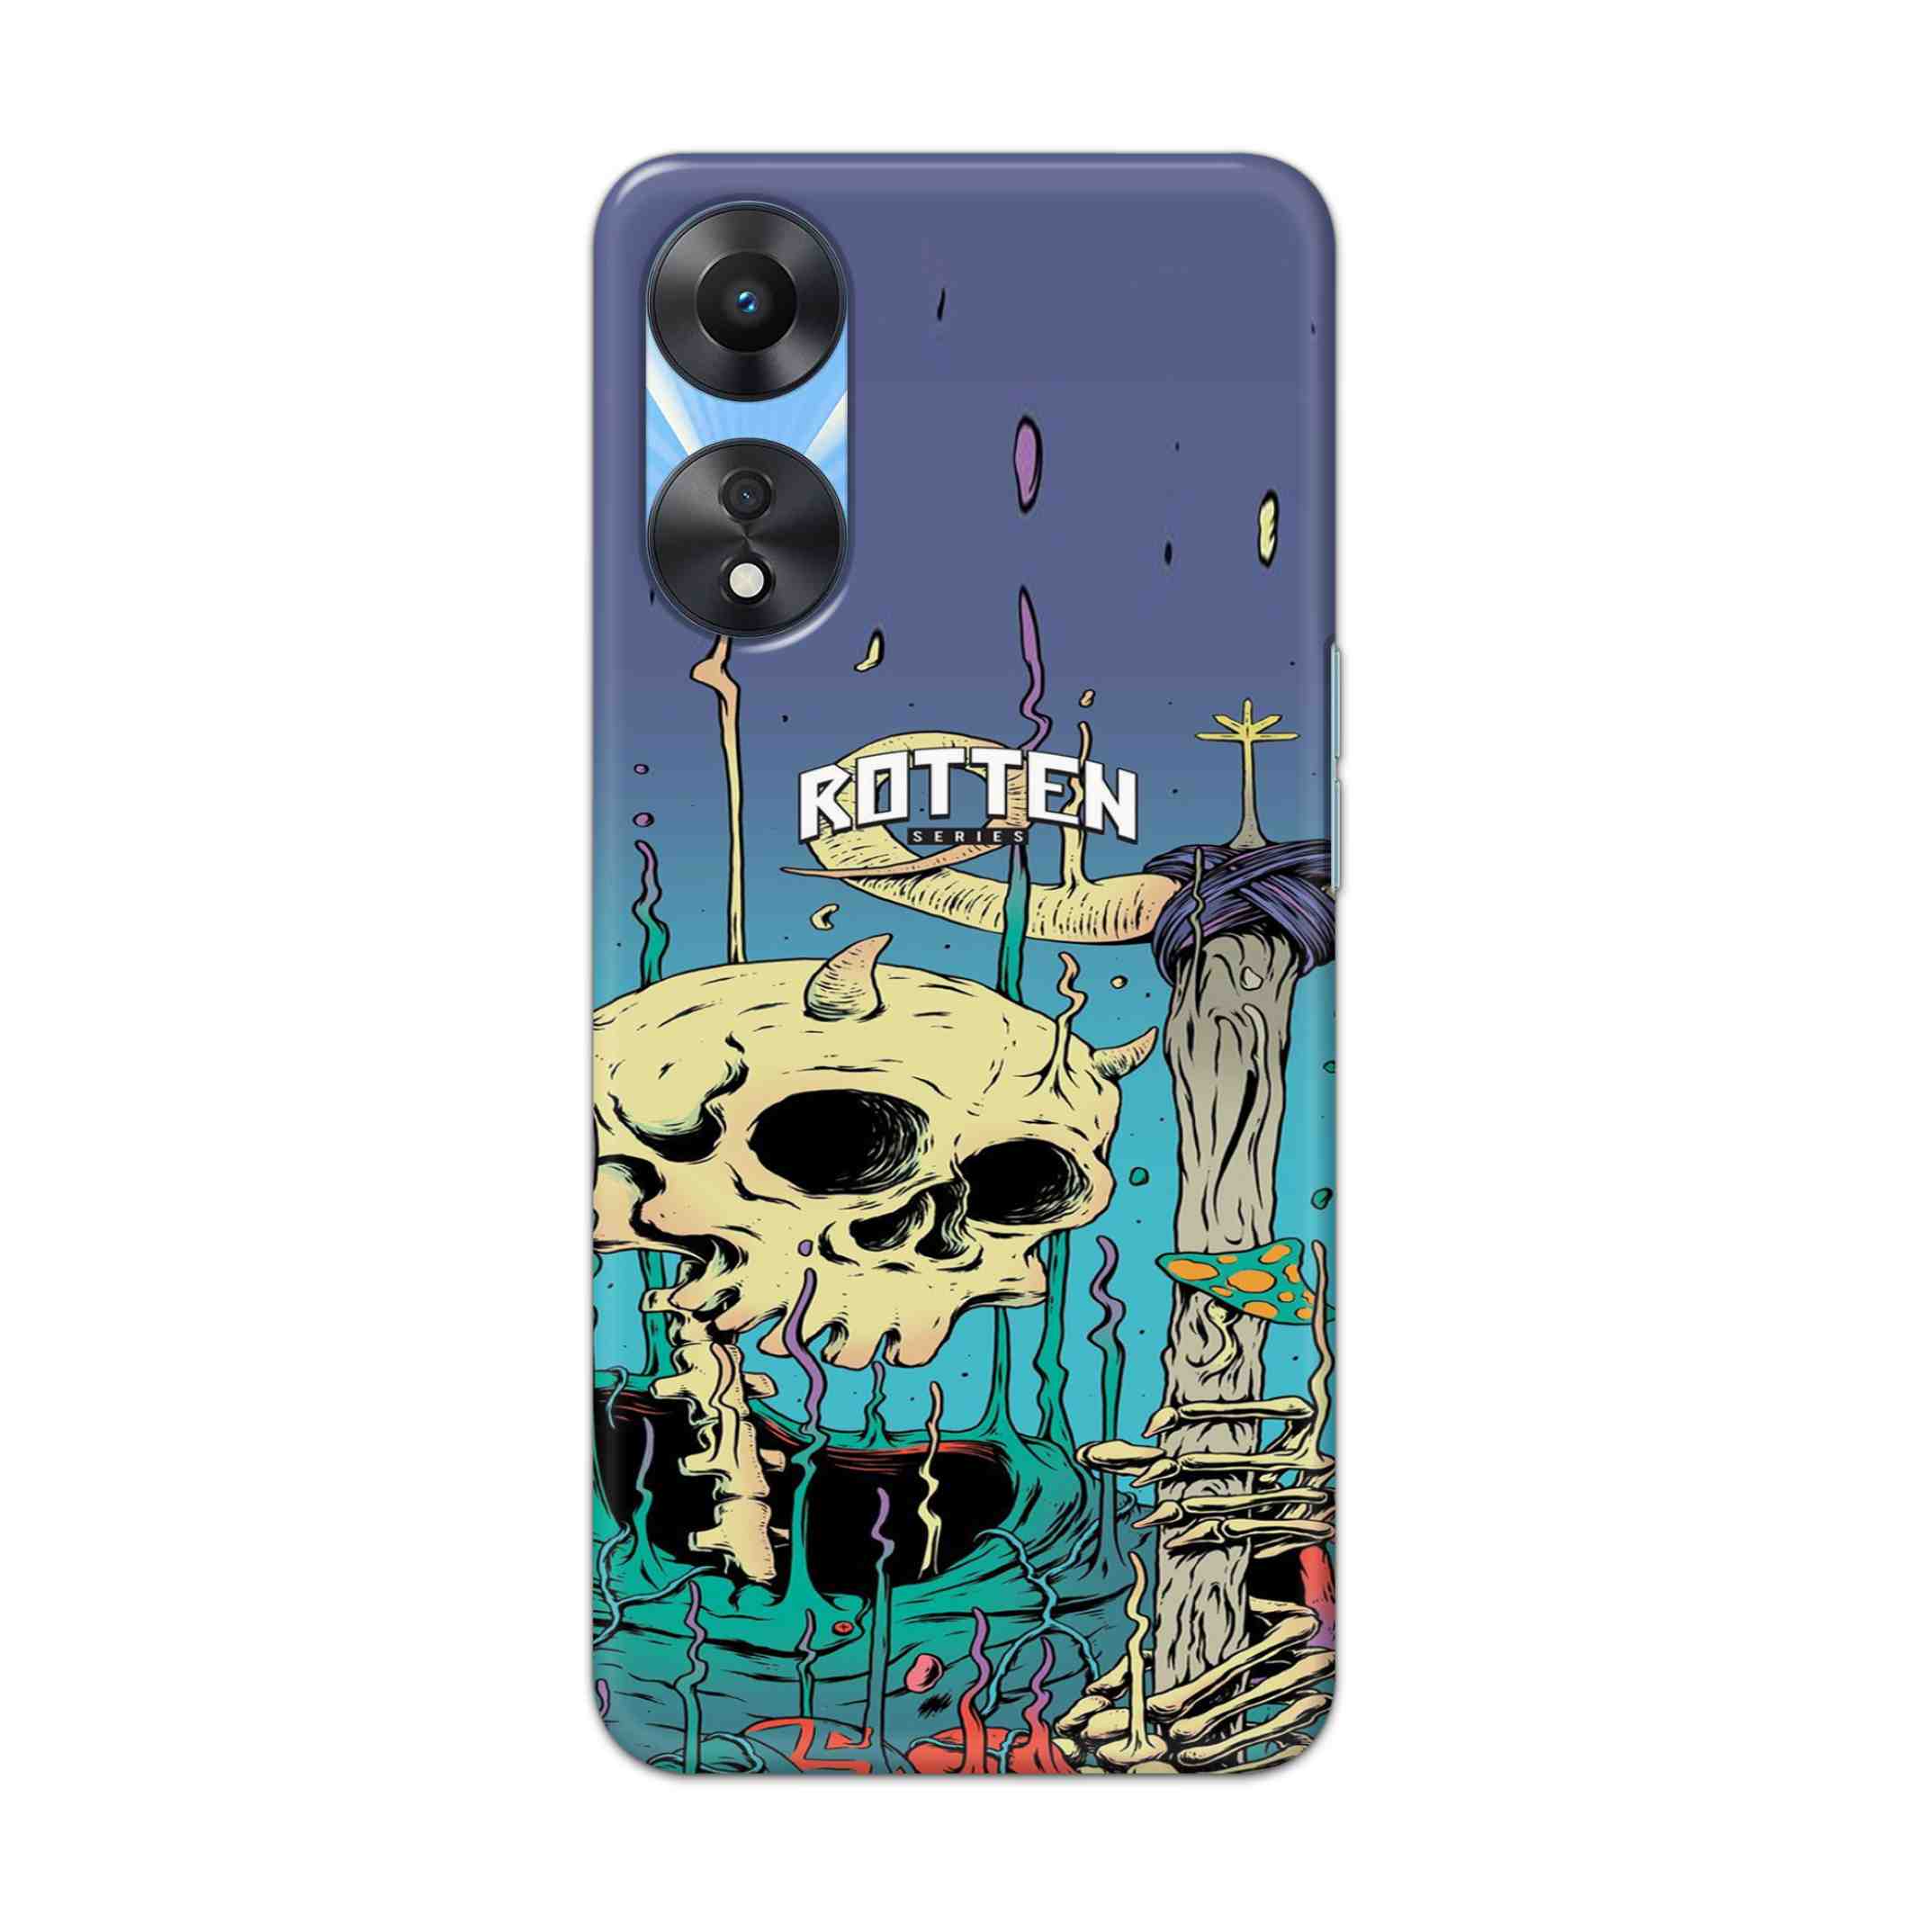 Buy Skull Hard Back Mobile Phone Case Cover For OPPO A78 Online